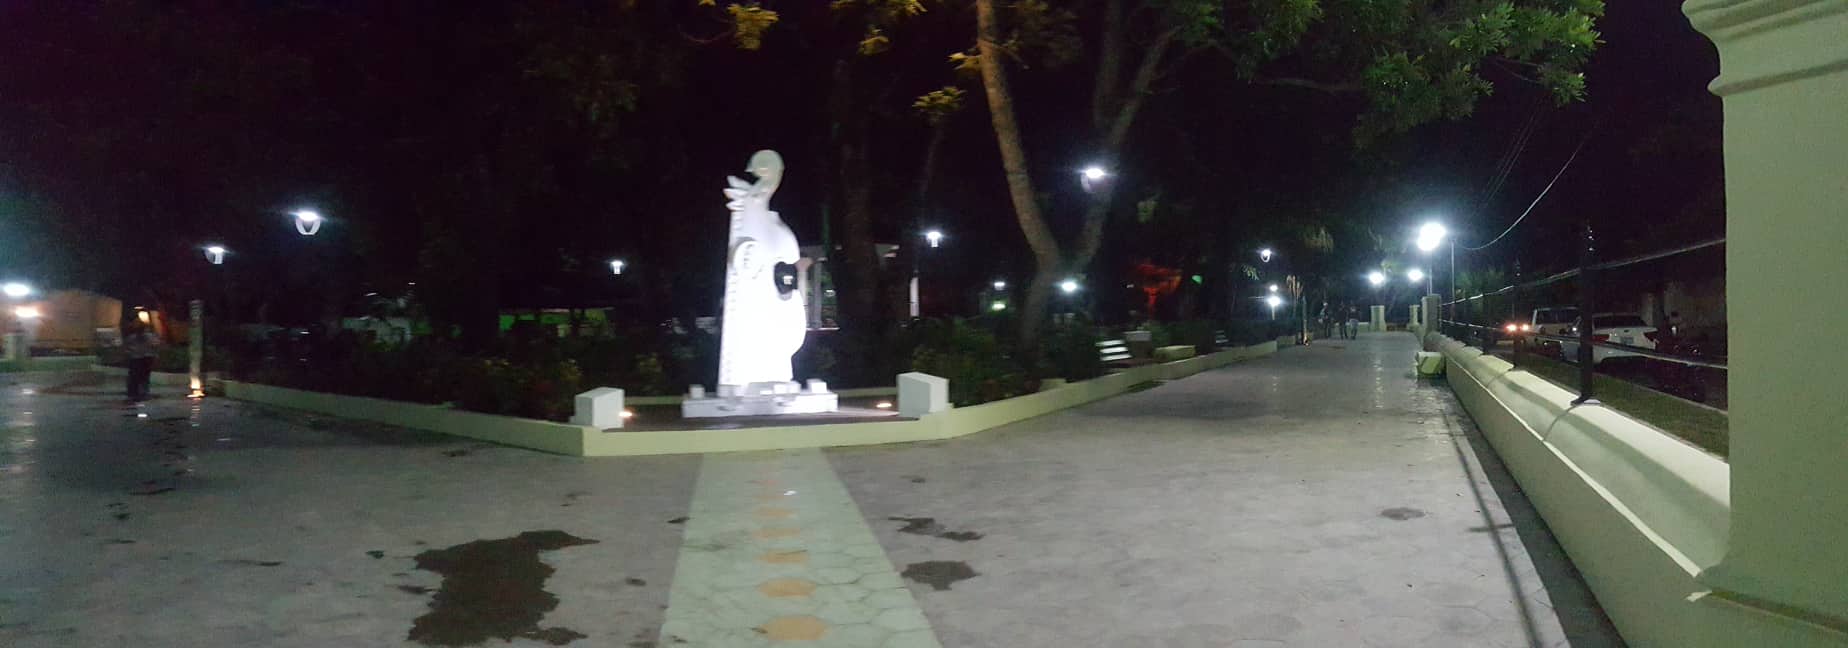 Parque noche 2